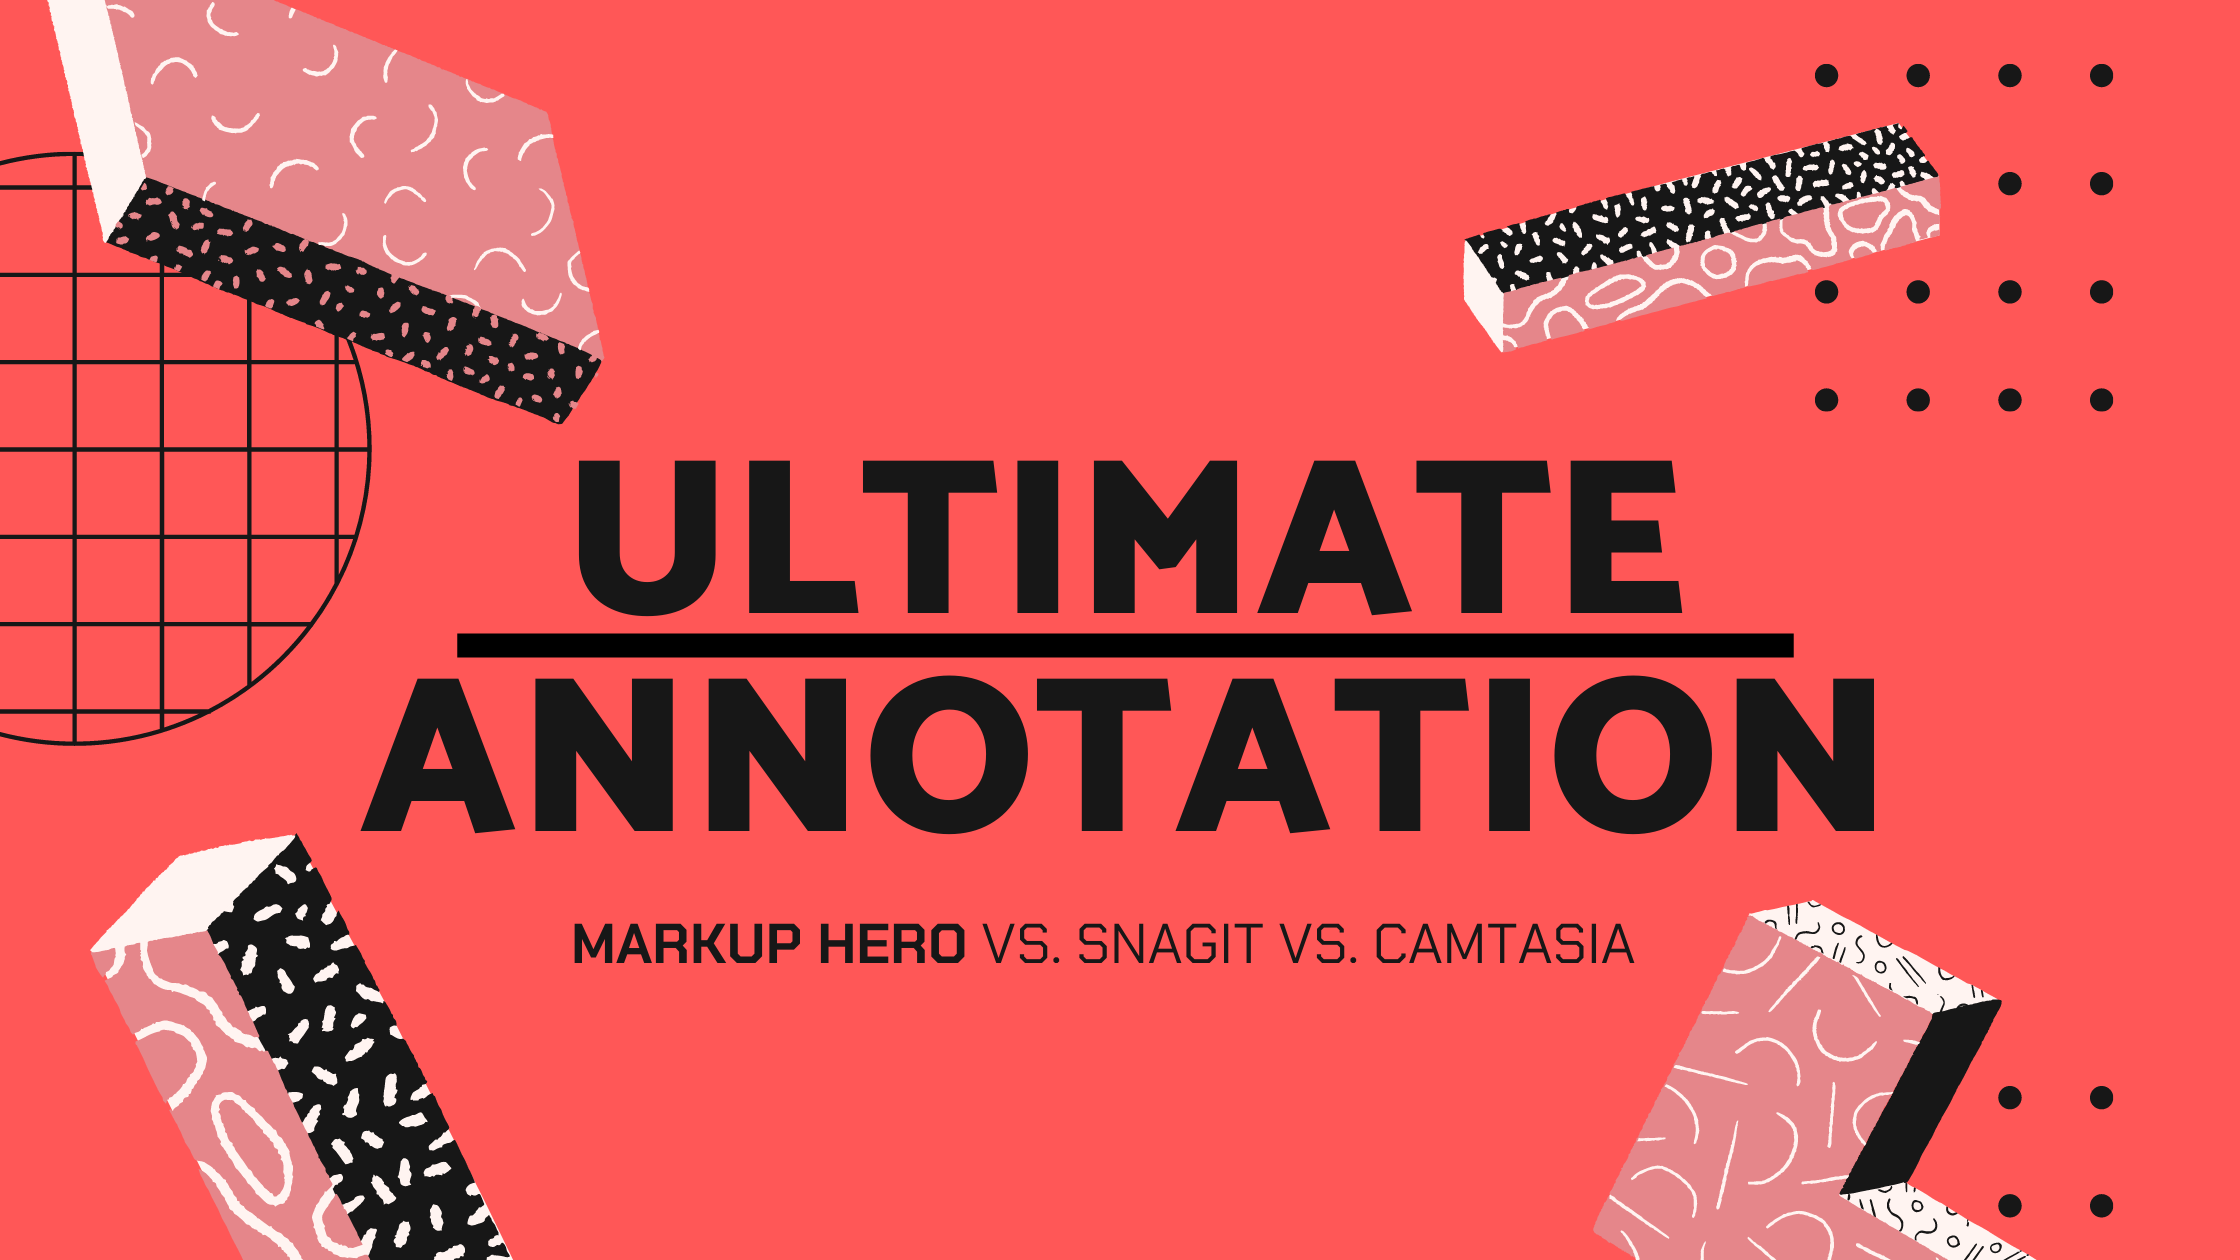 annotations camtasia 2 for mac tutorial